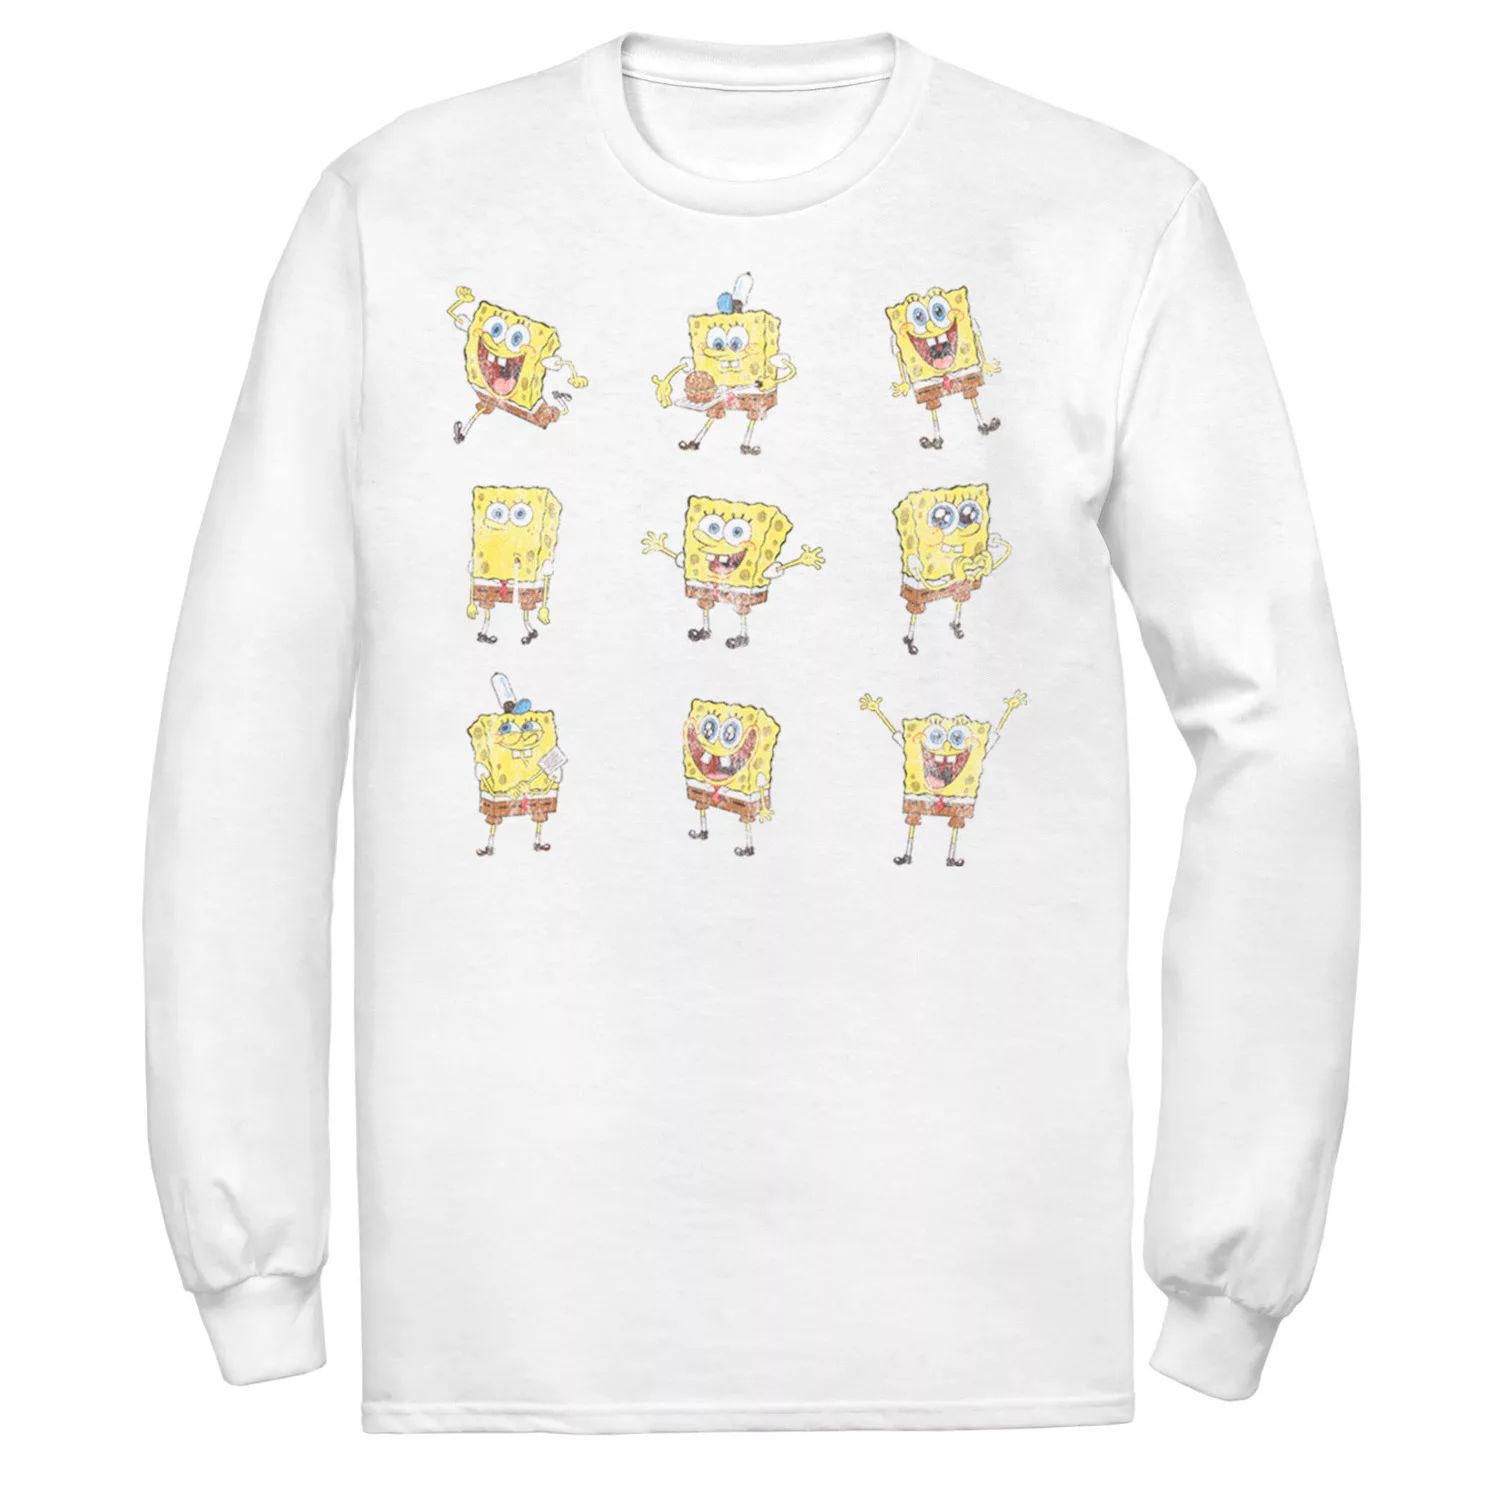 Мужская футболка Happy Poses Sponge Bob SquarePants Nickelodeon цена и фото